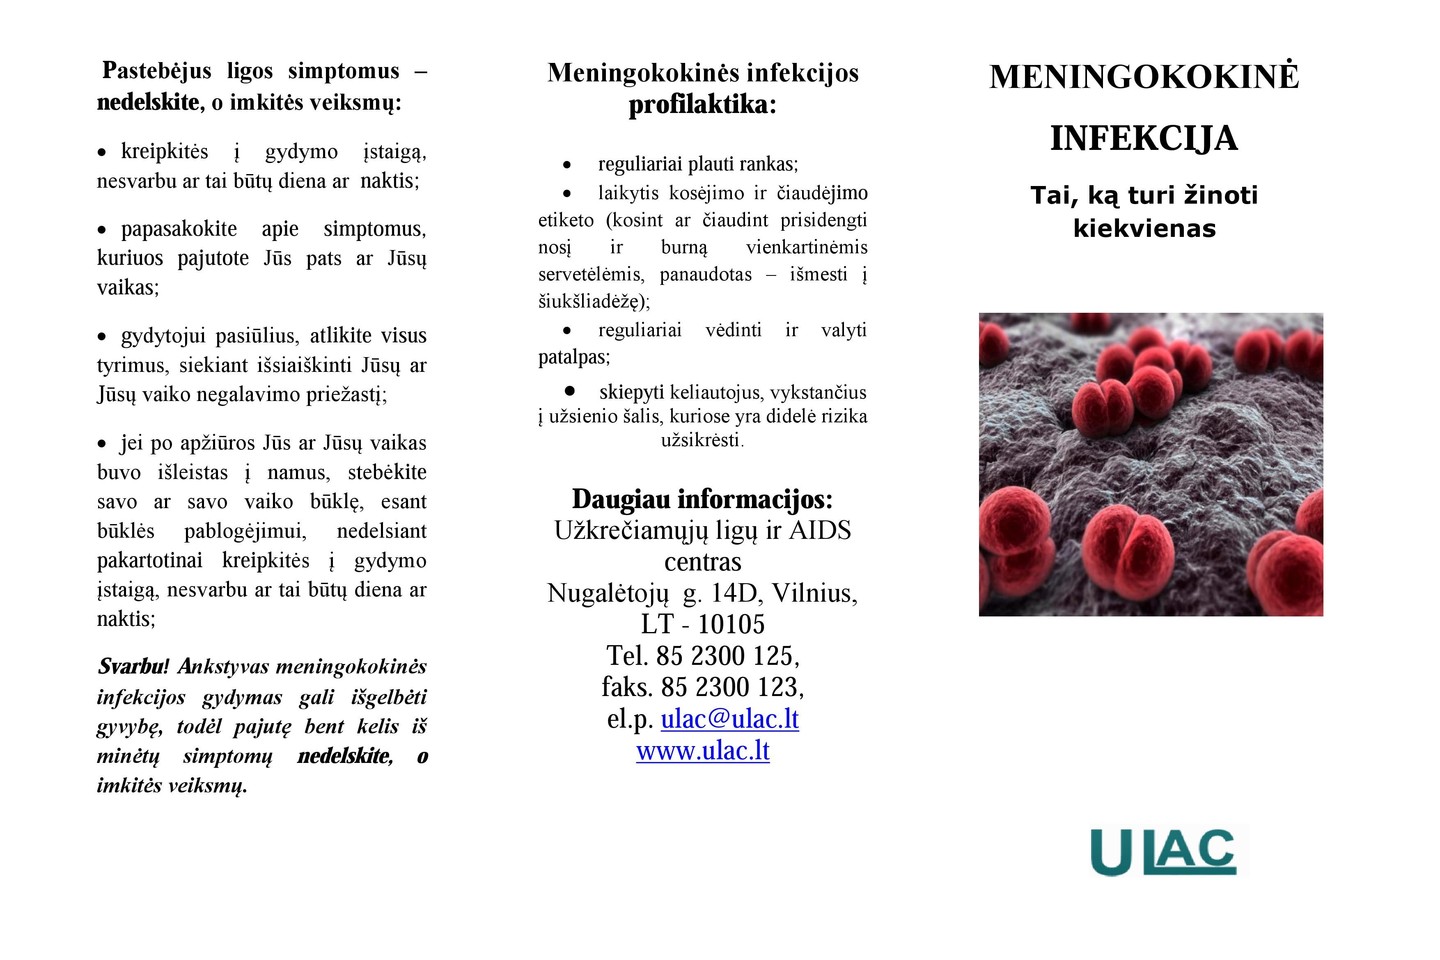  Laiku nediagnozuota meningokokinė infekcija tampa pavojinga gyvybei.<br> ULAC nuotr.